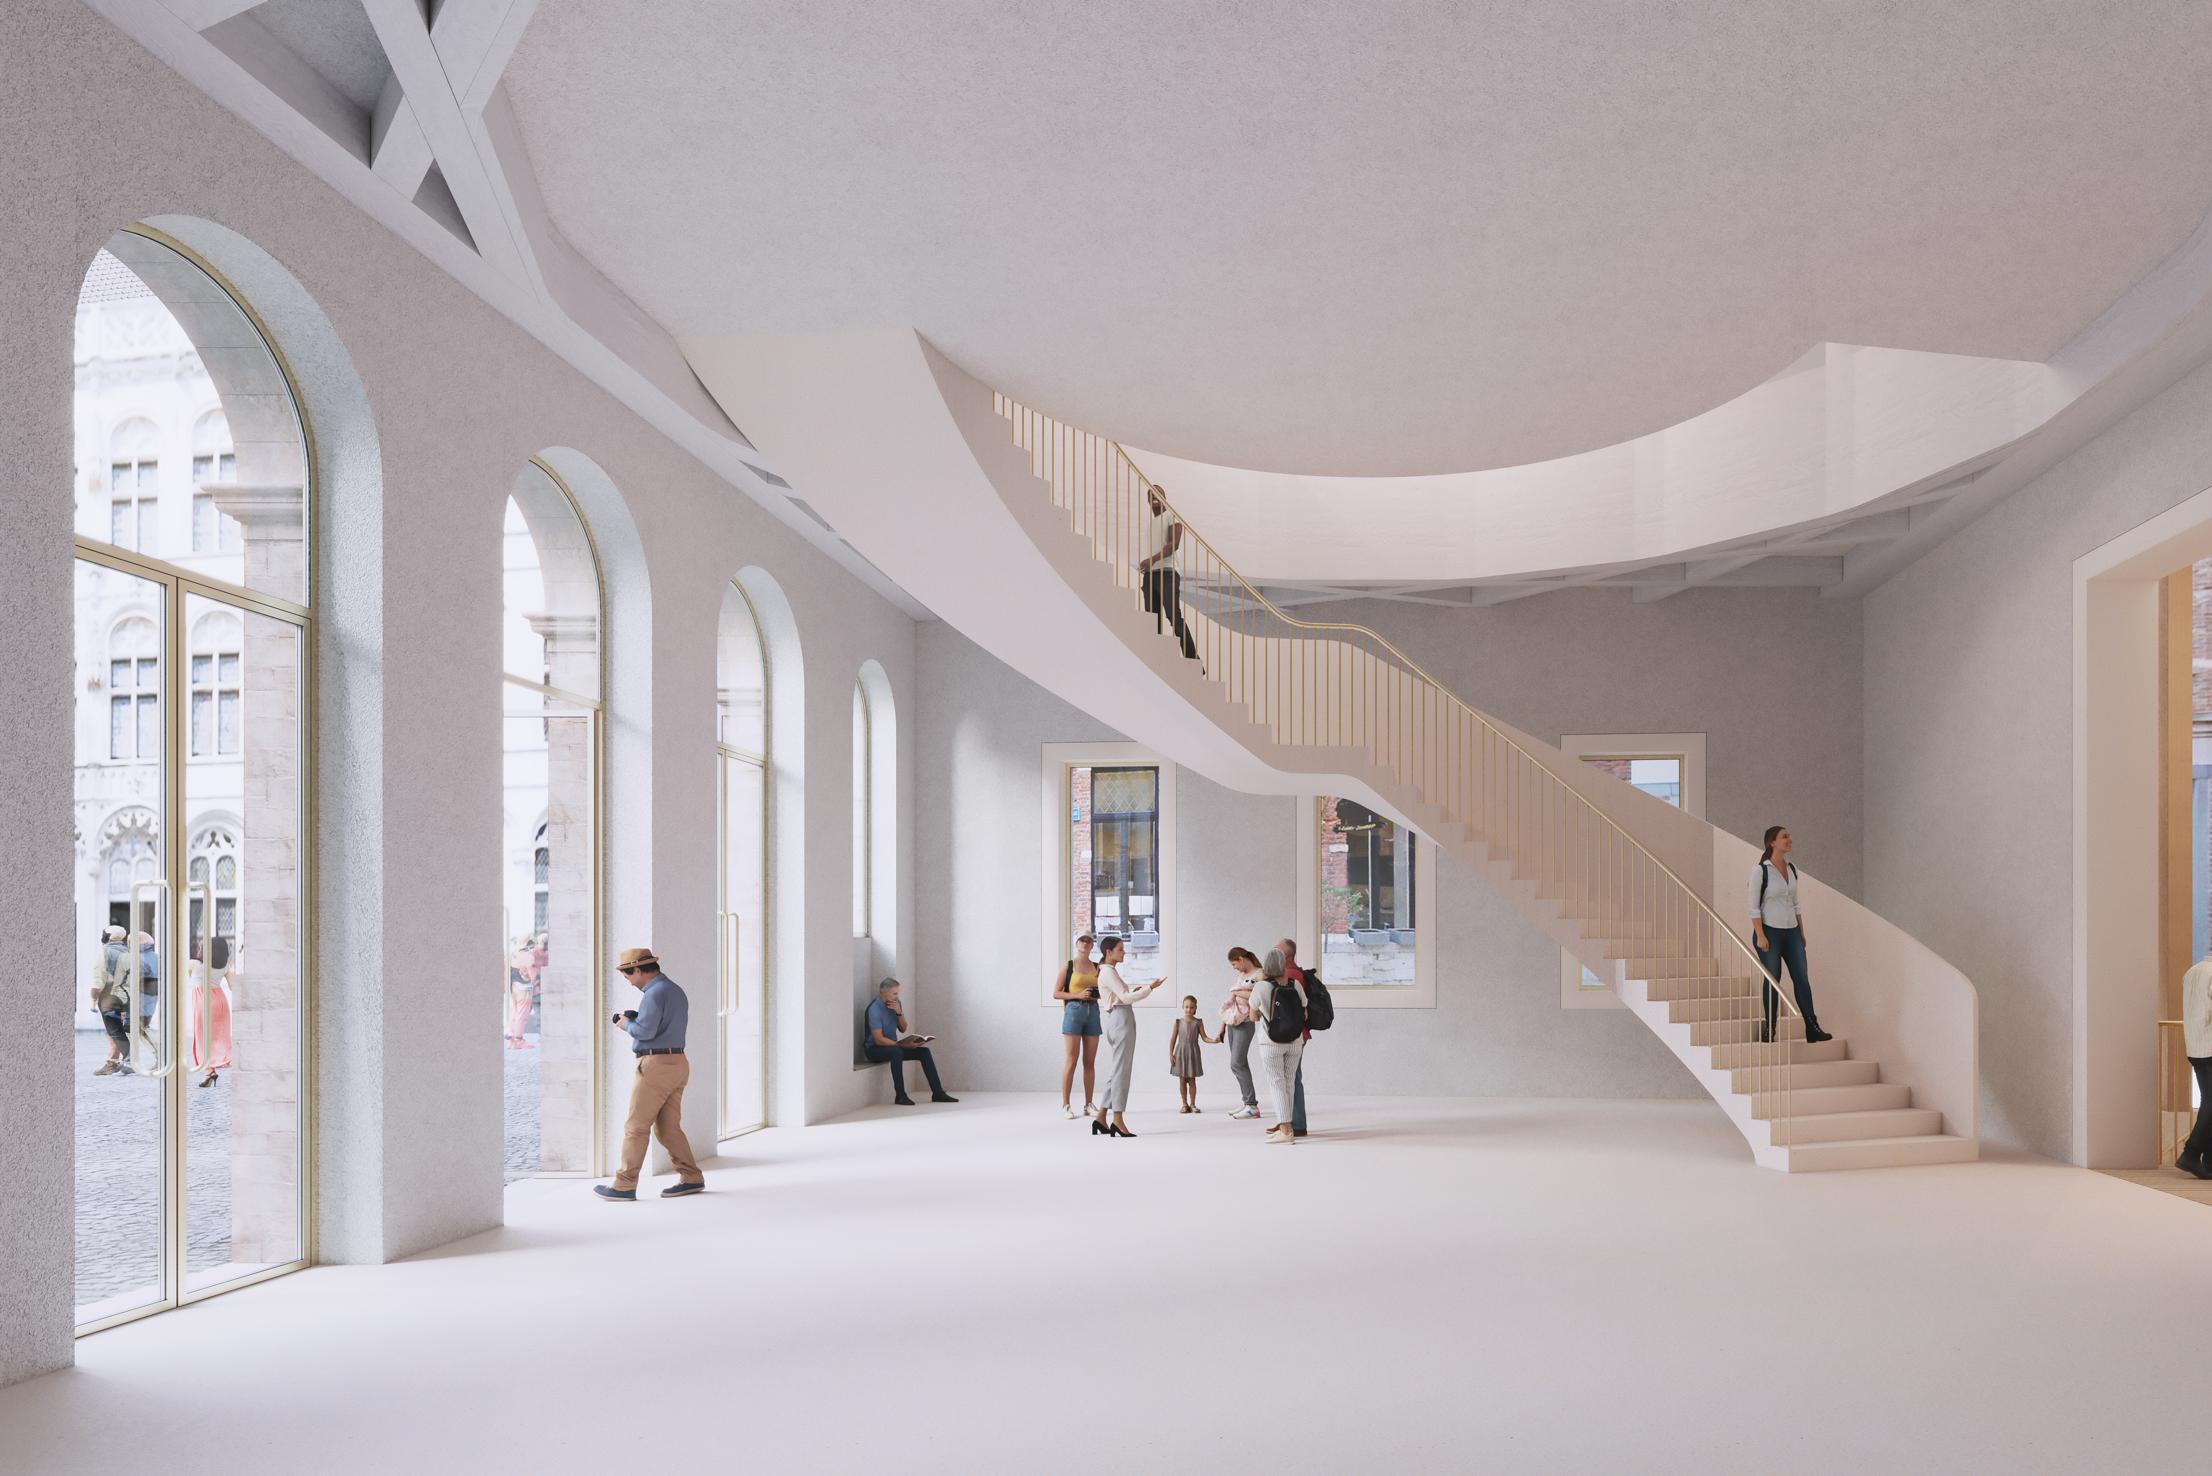 Architecten komen kritiek tegemoet met nieuw voorontwerp van stadhuis: “Een minder ingrijpende verandering”